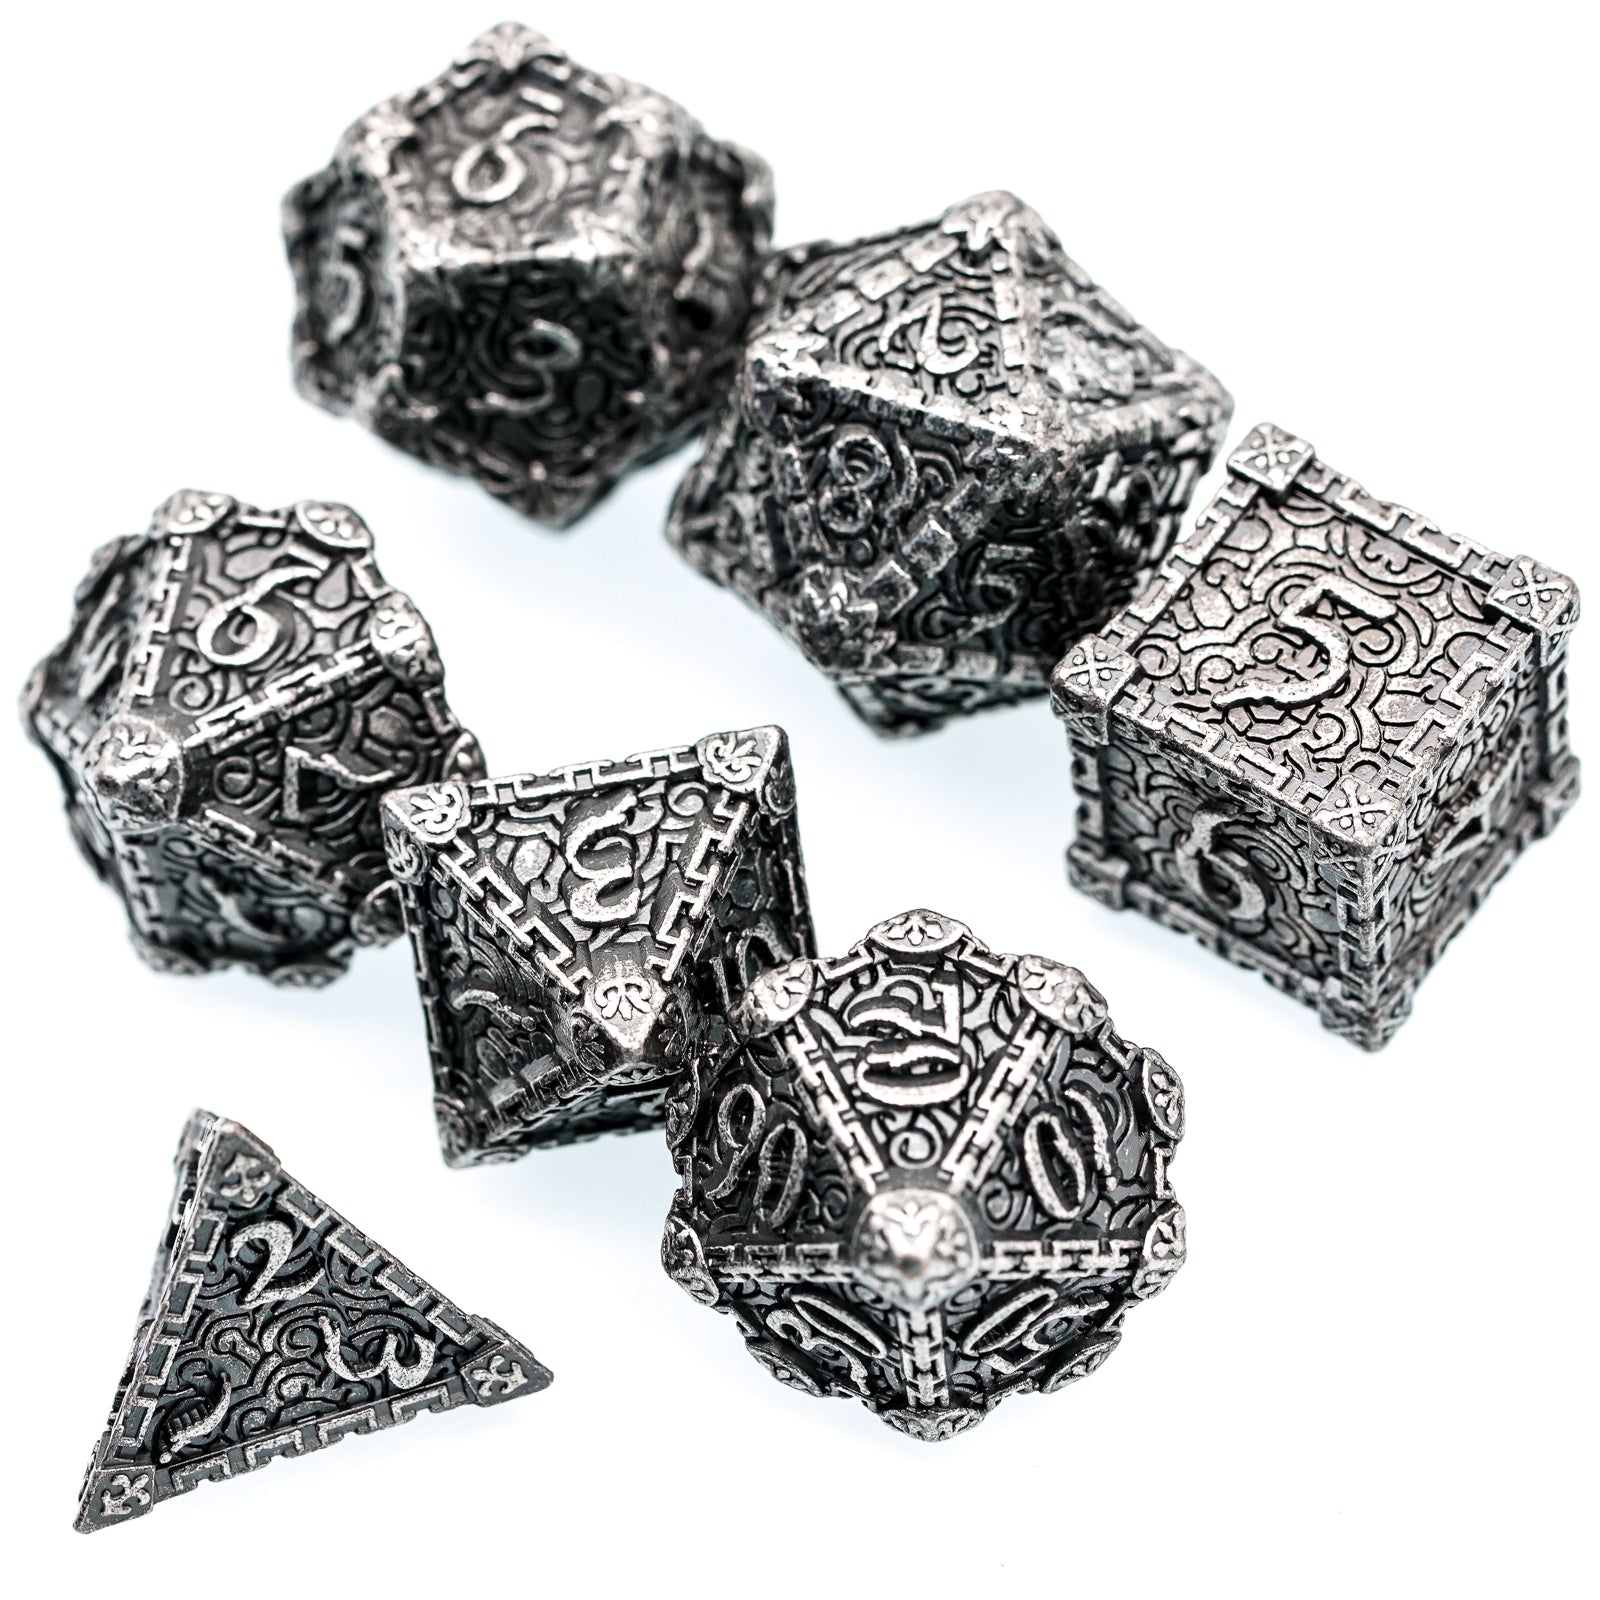 7 piece silver metal dice set 